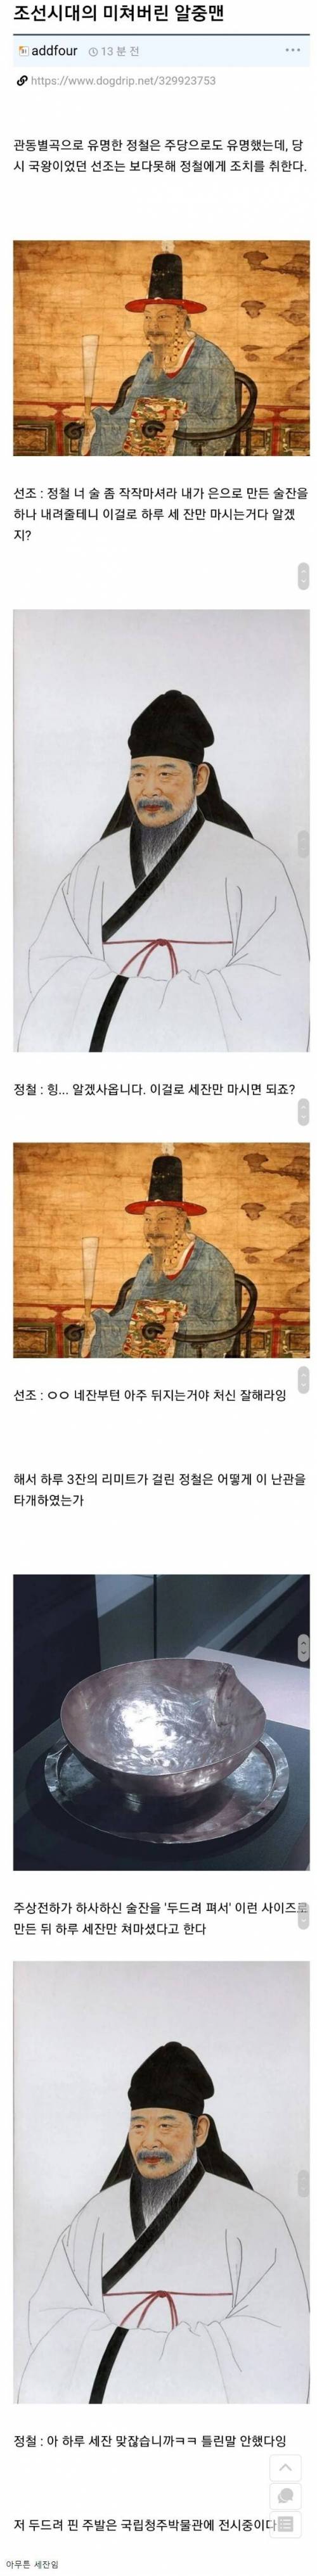 [스압] 조선시대 알콜중독자 레전드.jpg